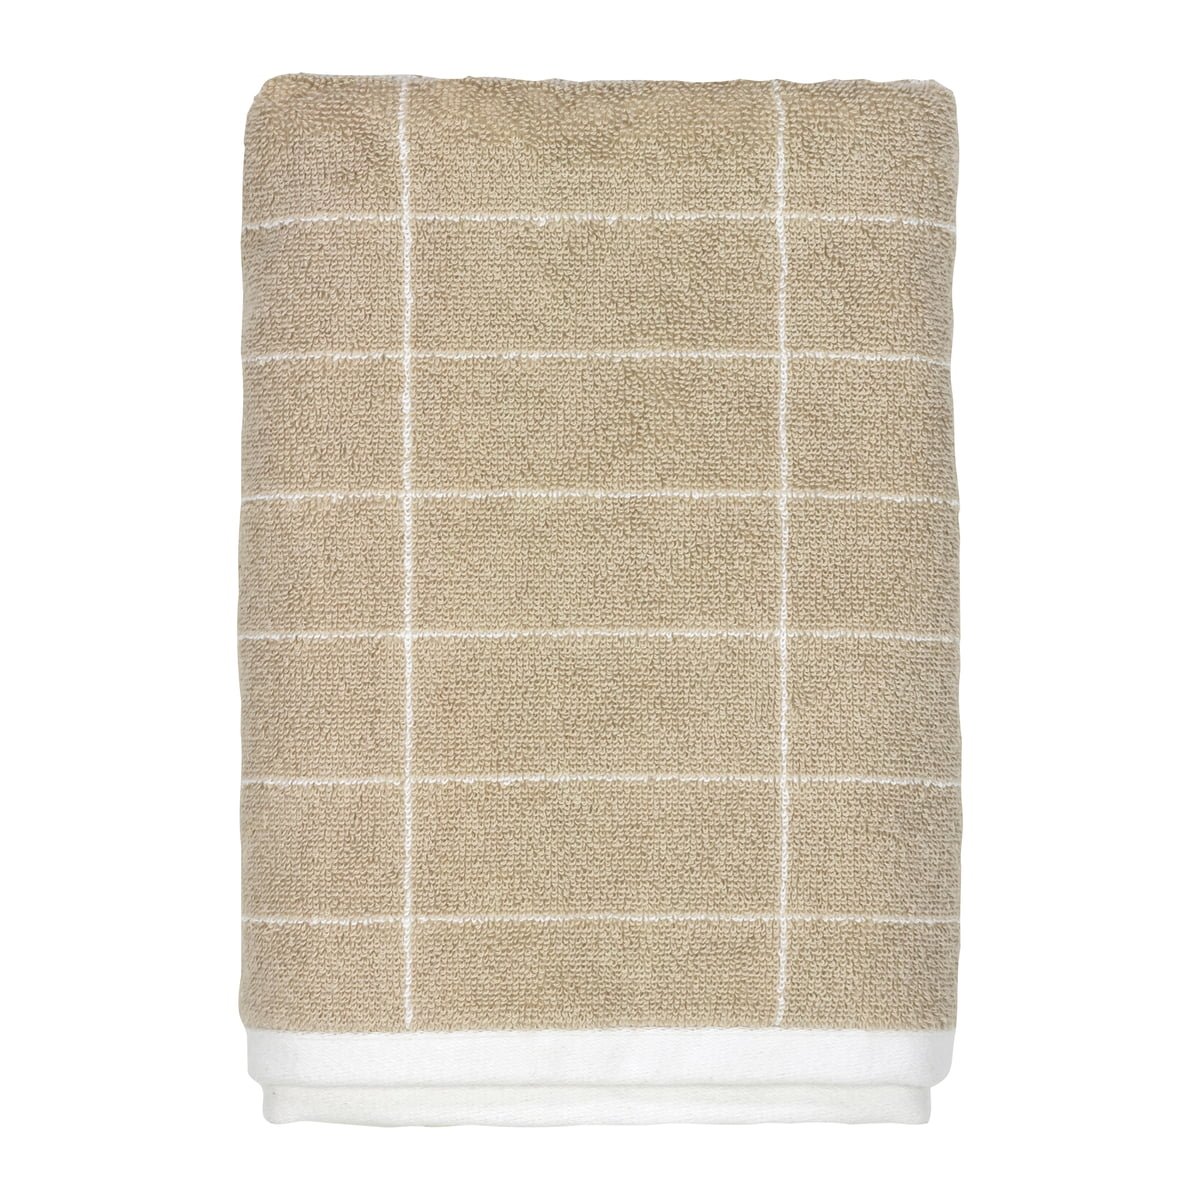 Mette Ditmer - TILE STONE bath towel 70x140 - Sand - Hjemme og kjøkken